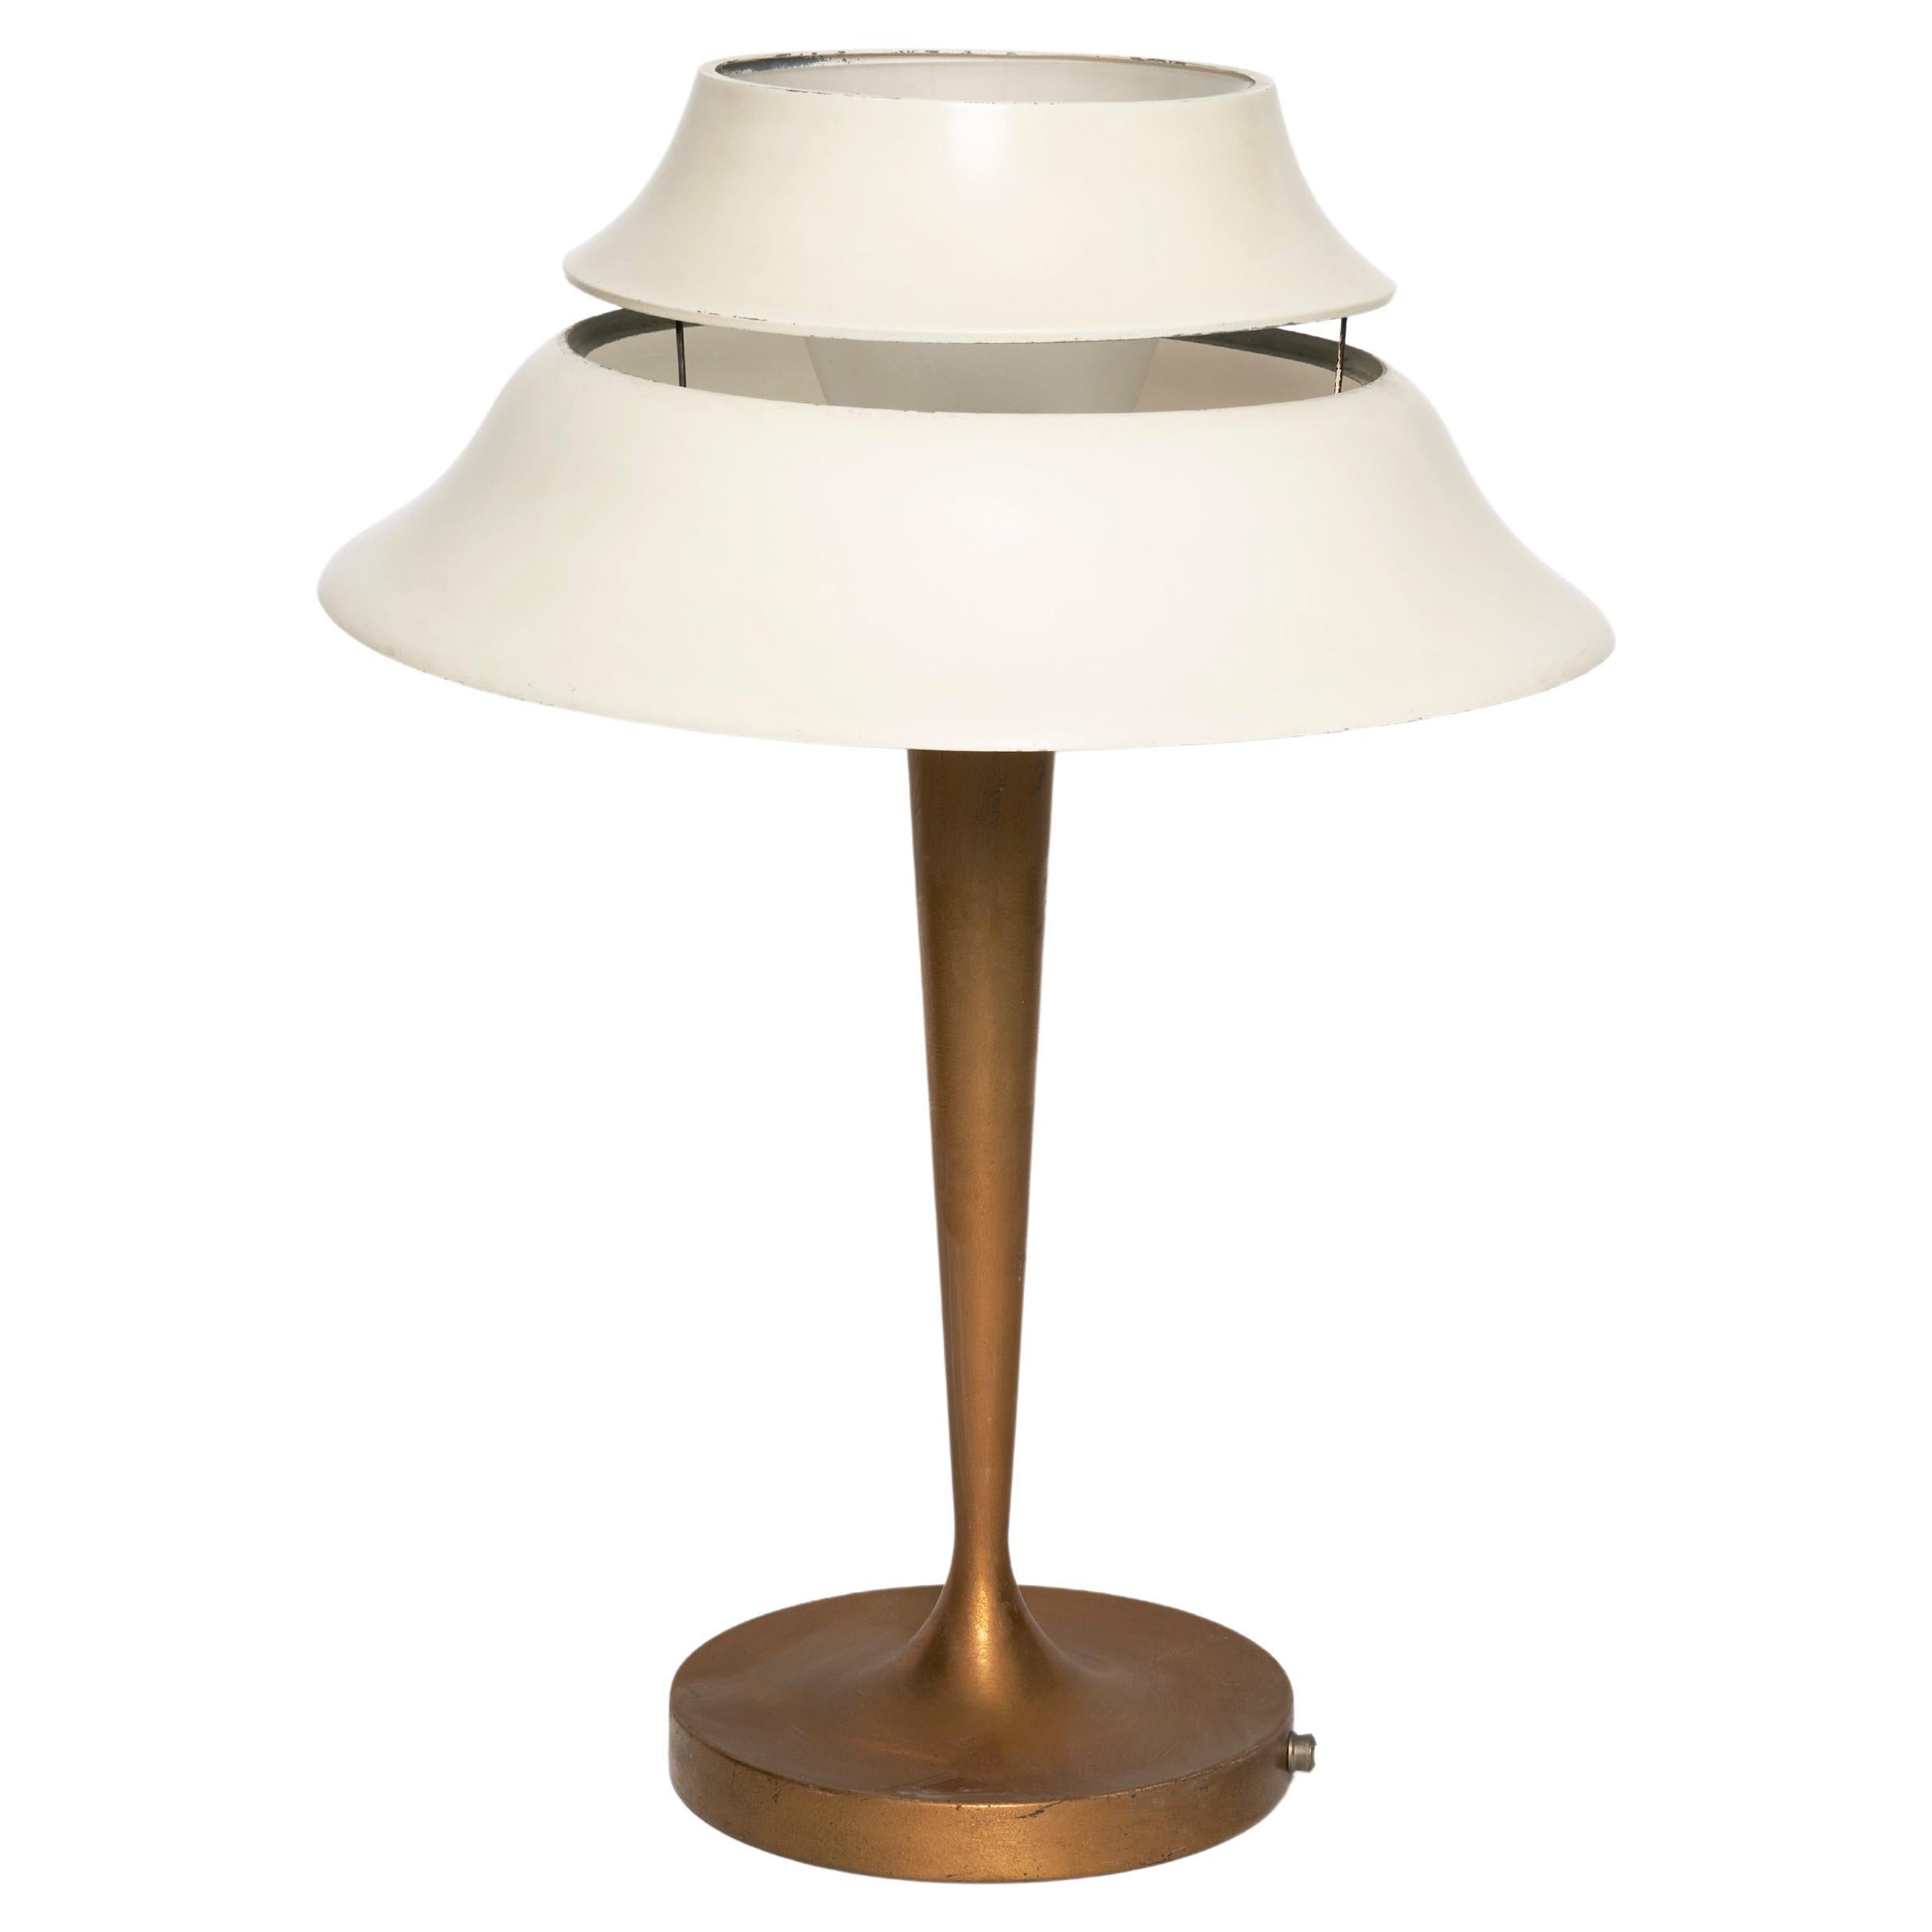 Atelier Jean Perzel Table Lamp "516"